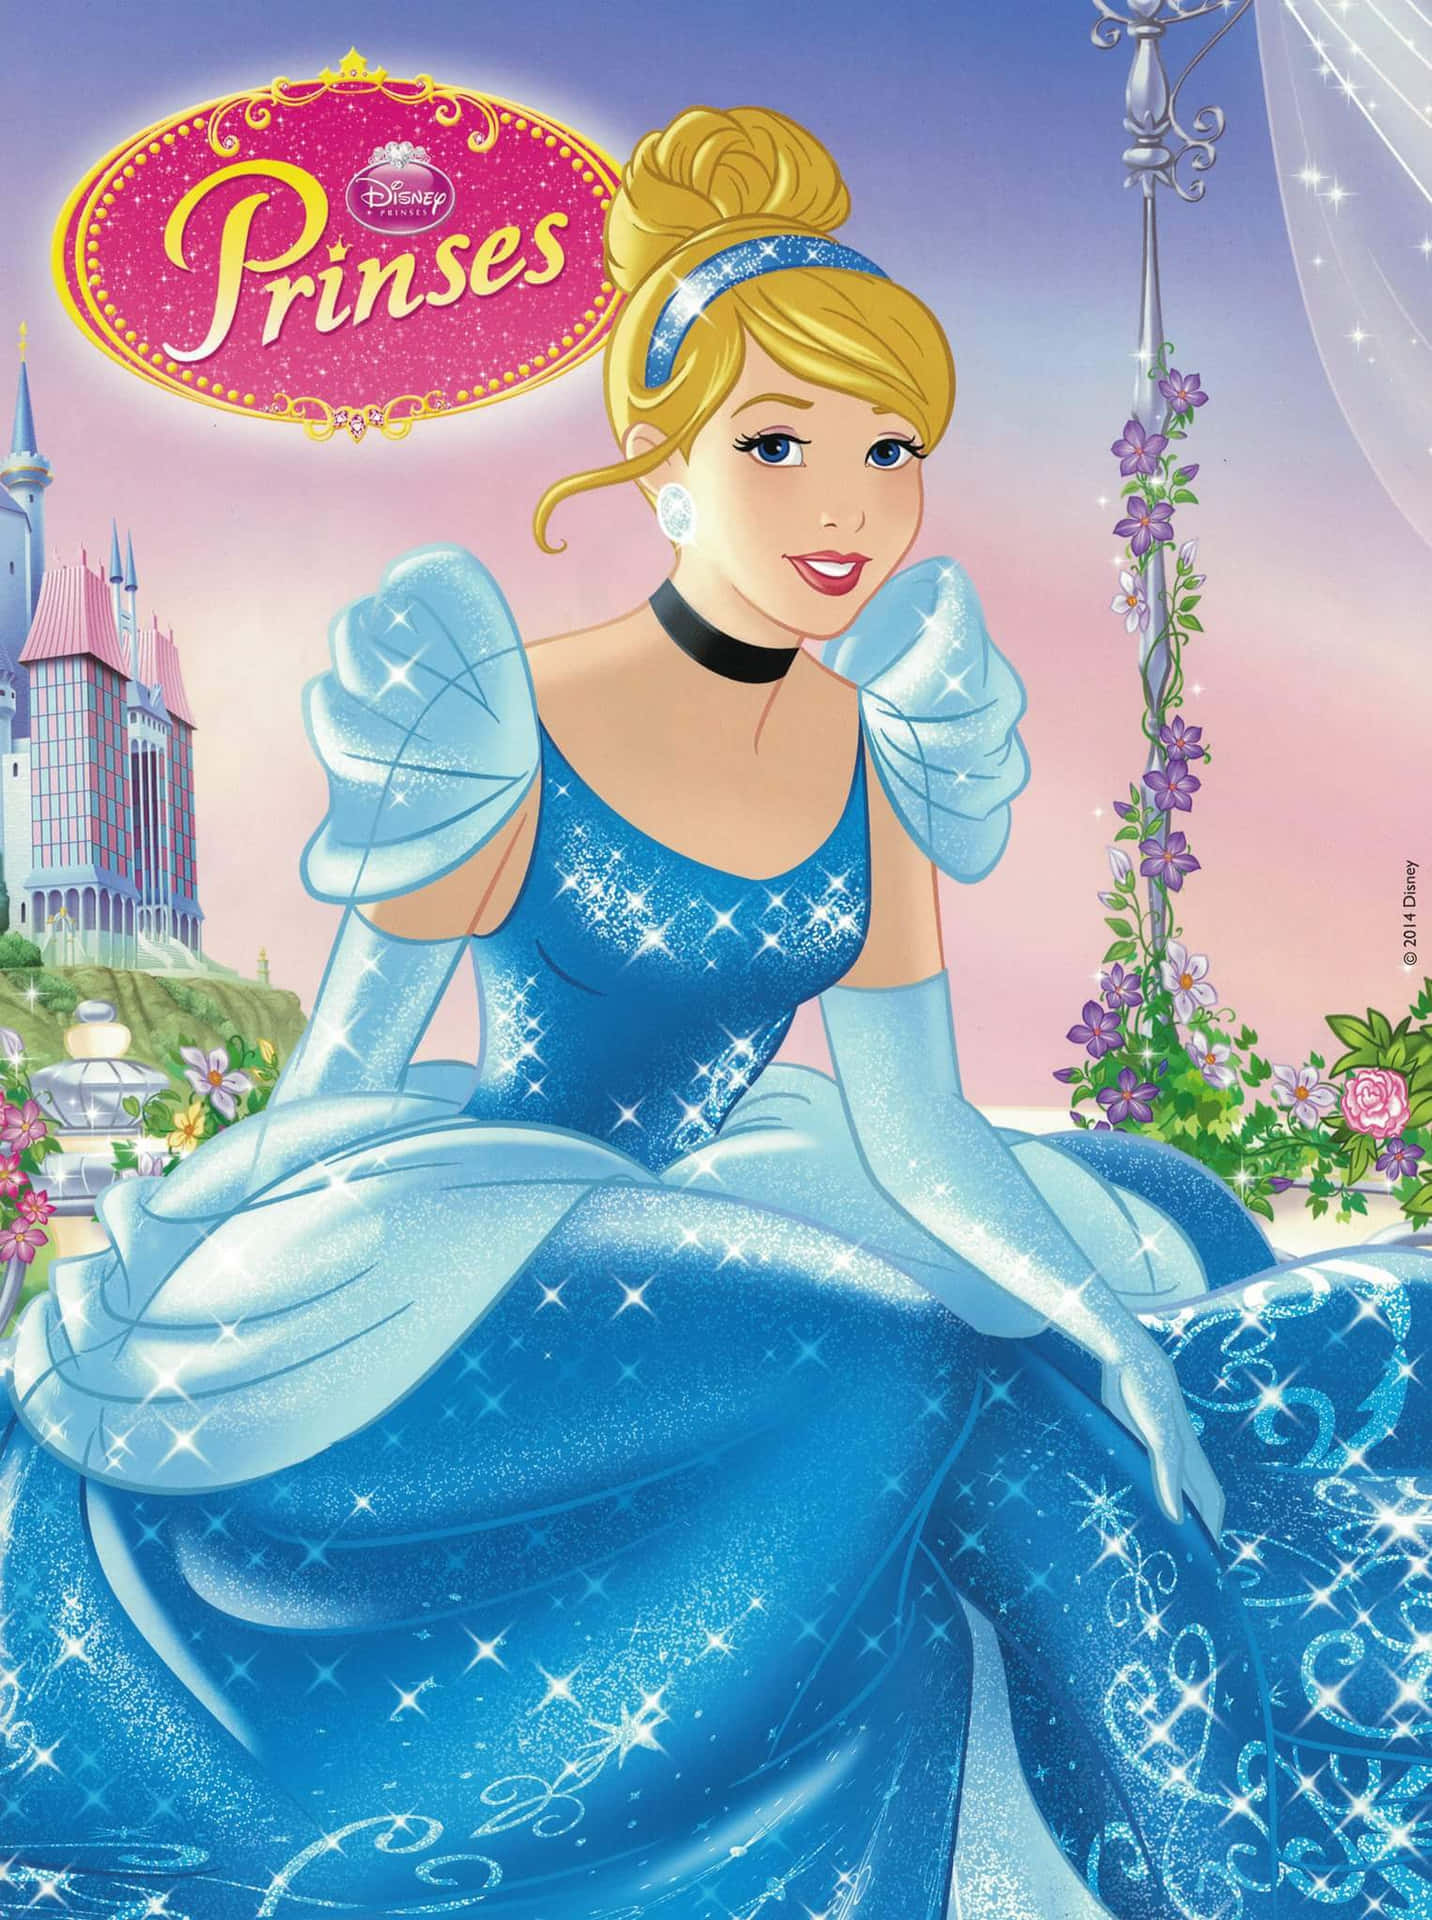 Prinsessebilleder glimter på en lyseblå baggrund.